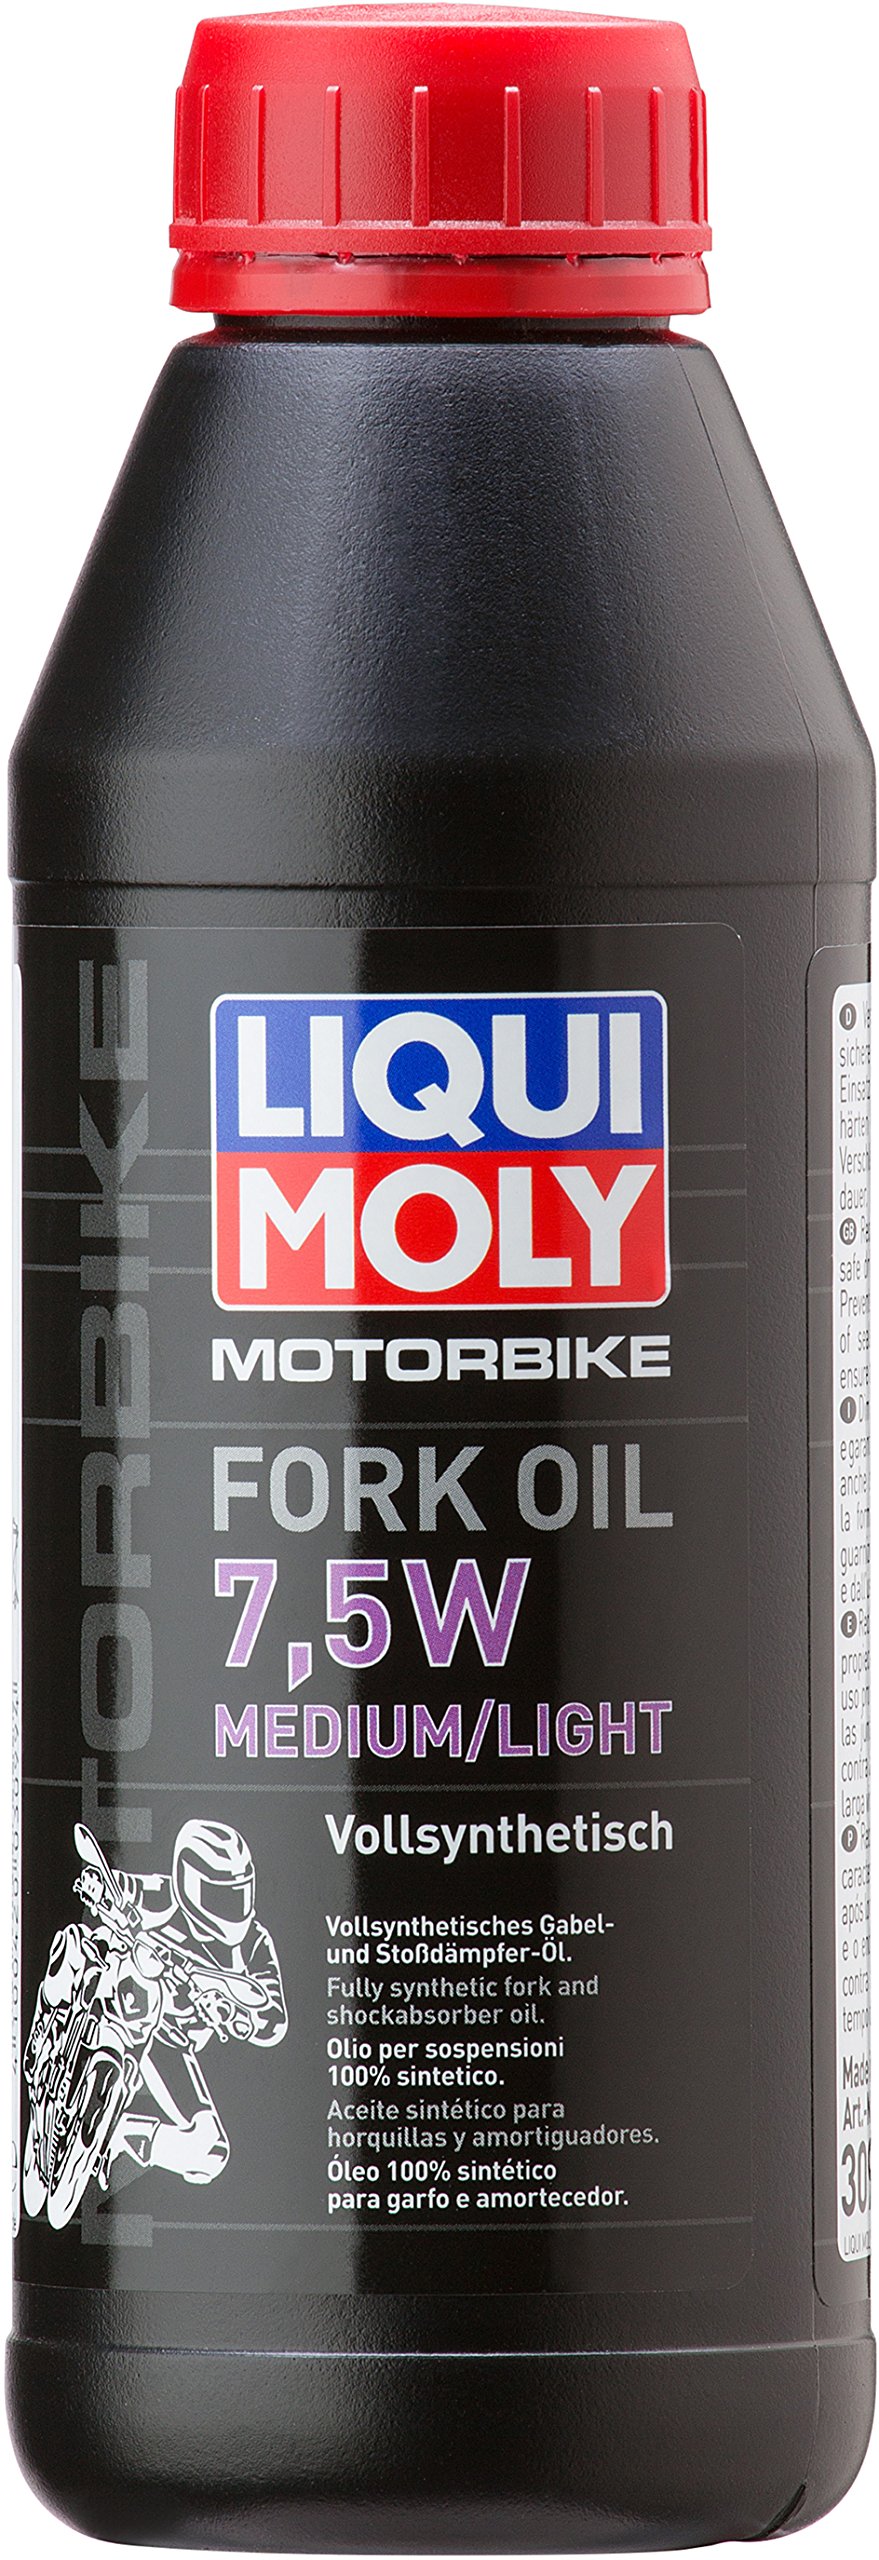 LIQUI MOLY Motorbike Fork Oil 7,5W medium/light | 500 ml | Motorrad Gabelöl | Art.-Nr.: 3099, farblos von Liqui Moly